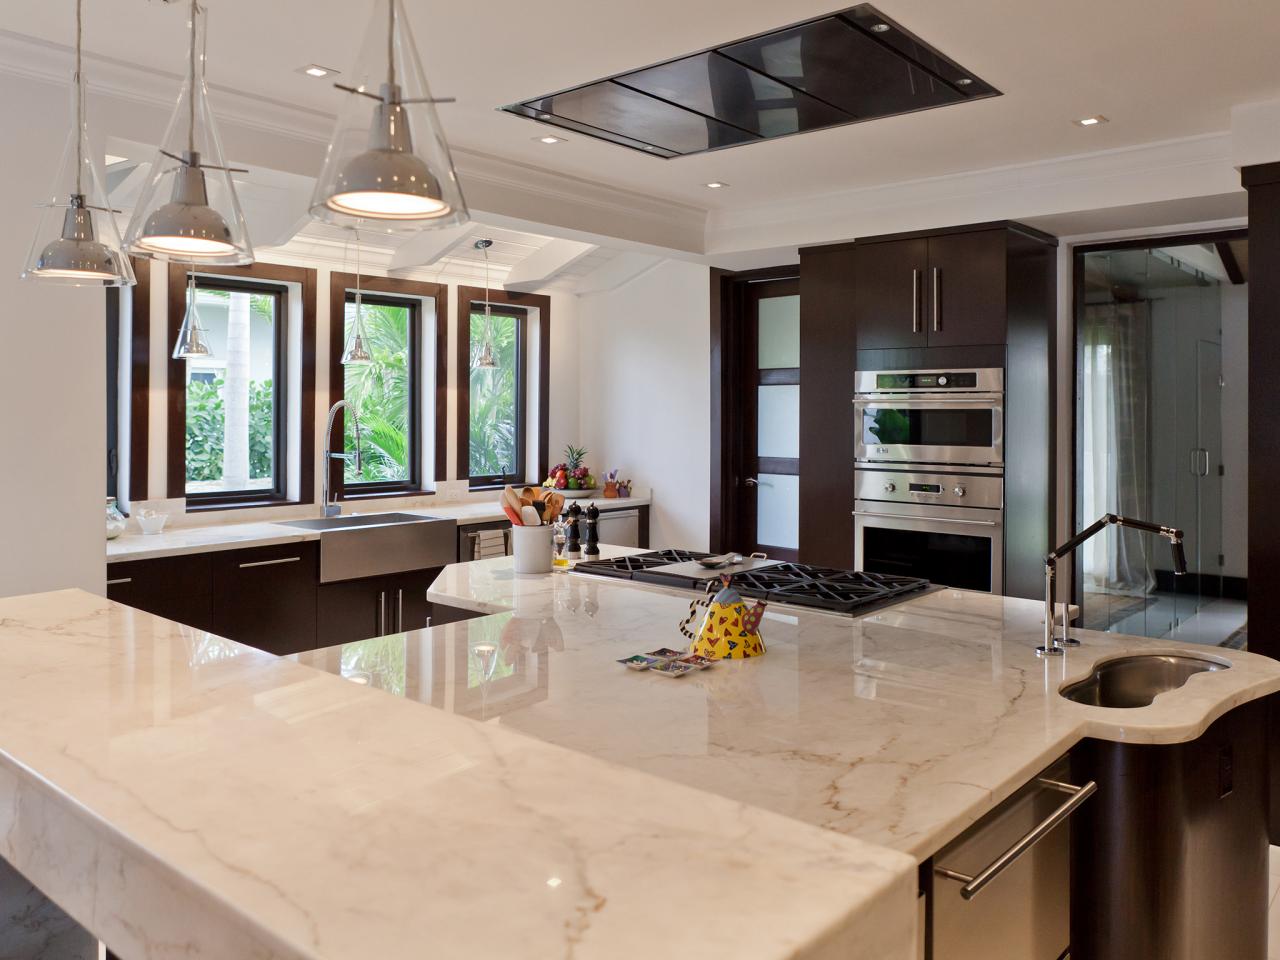  Desain Dapur Menggunakan Granit  Desain  Rumah  Minimalis 